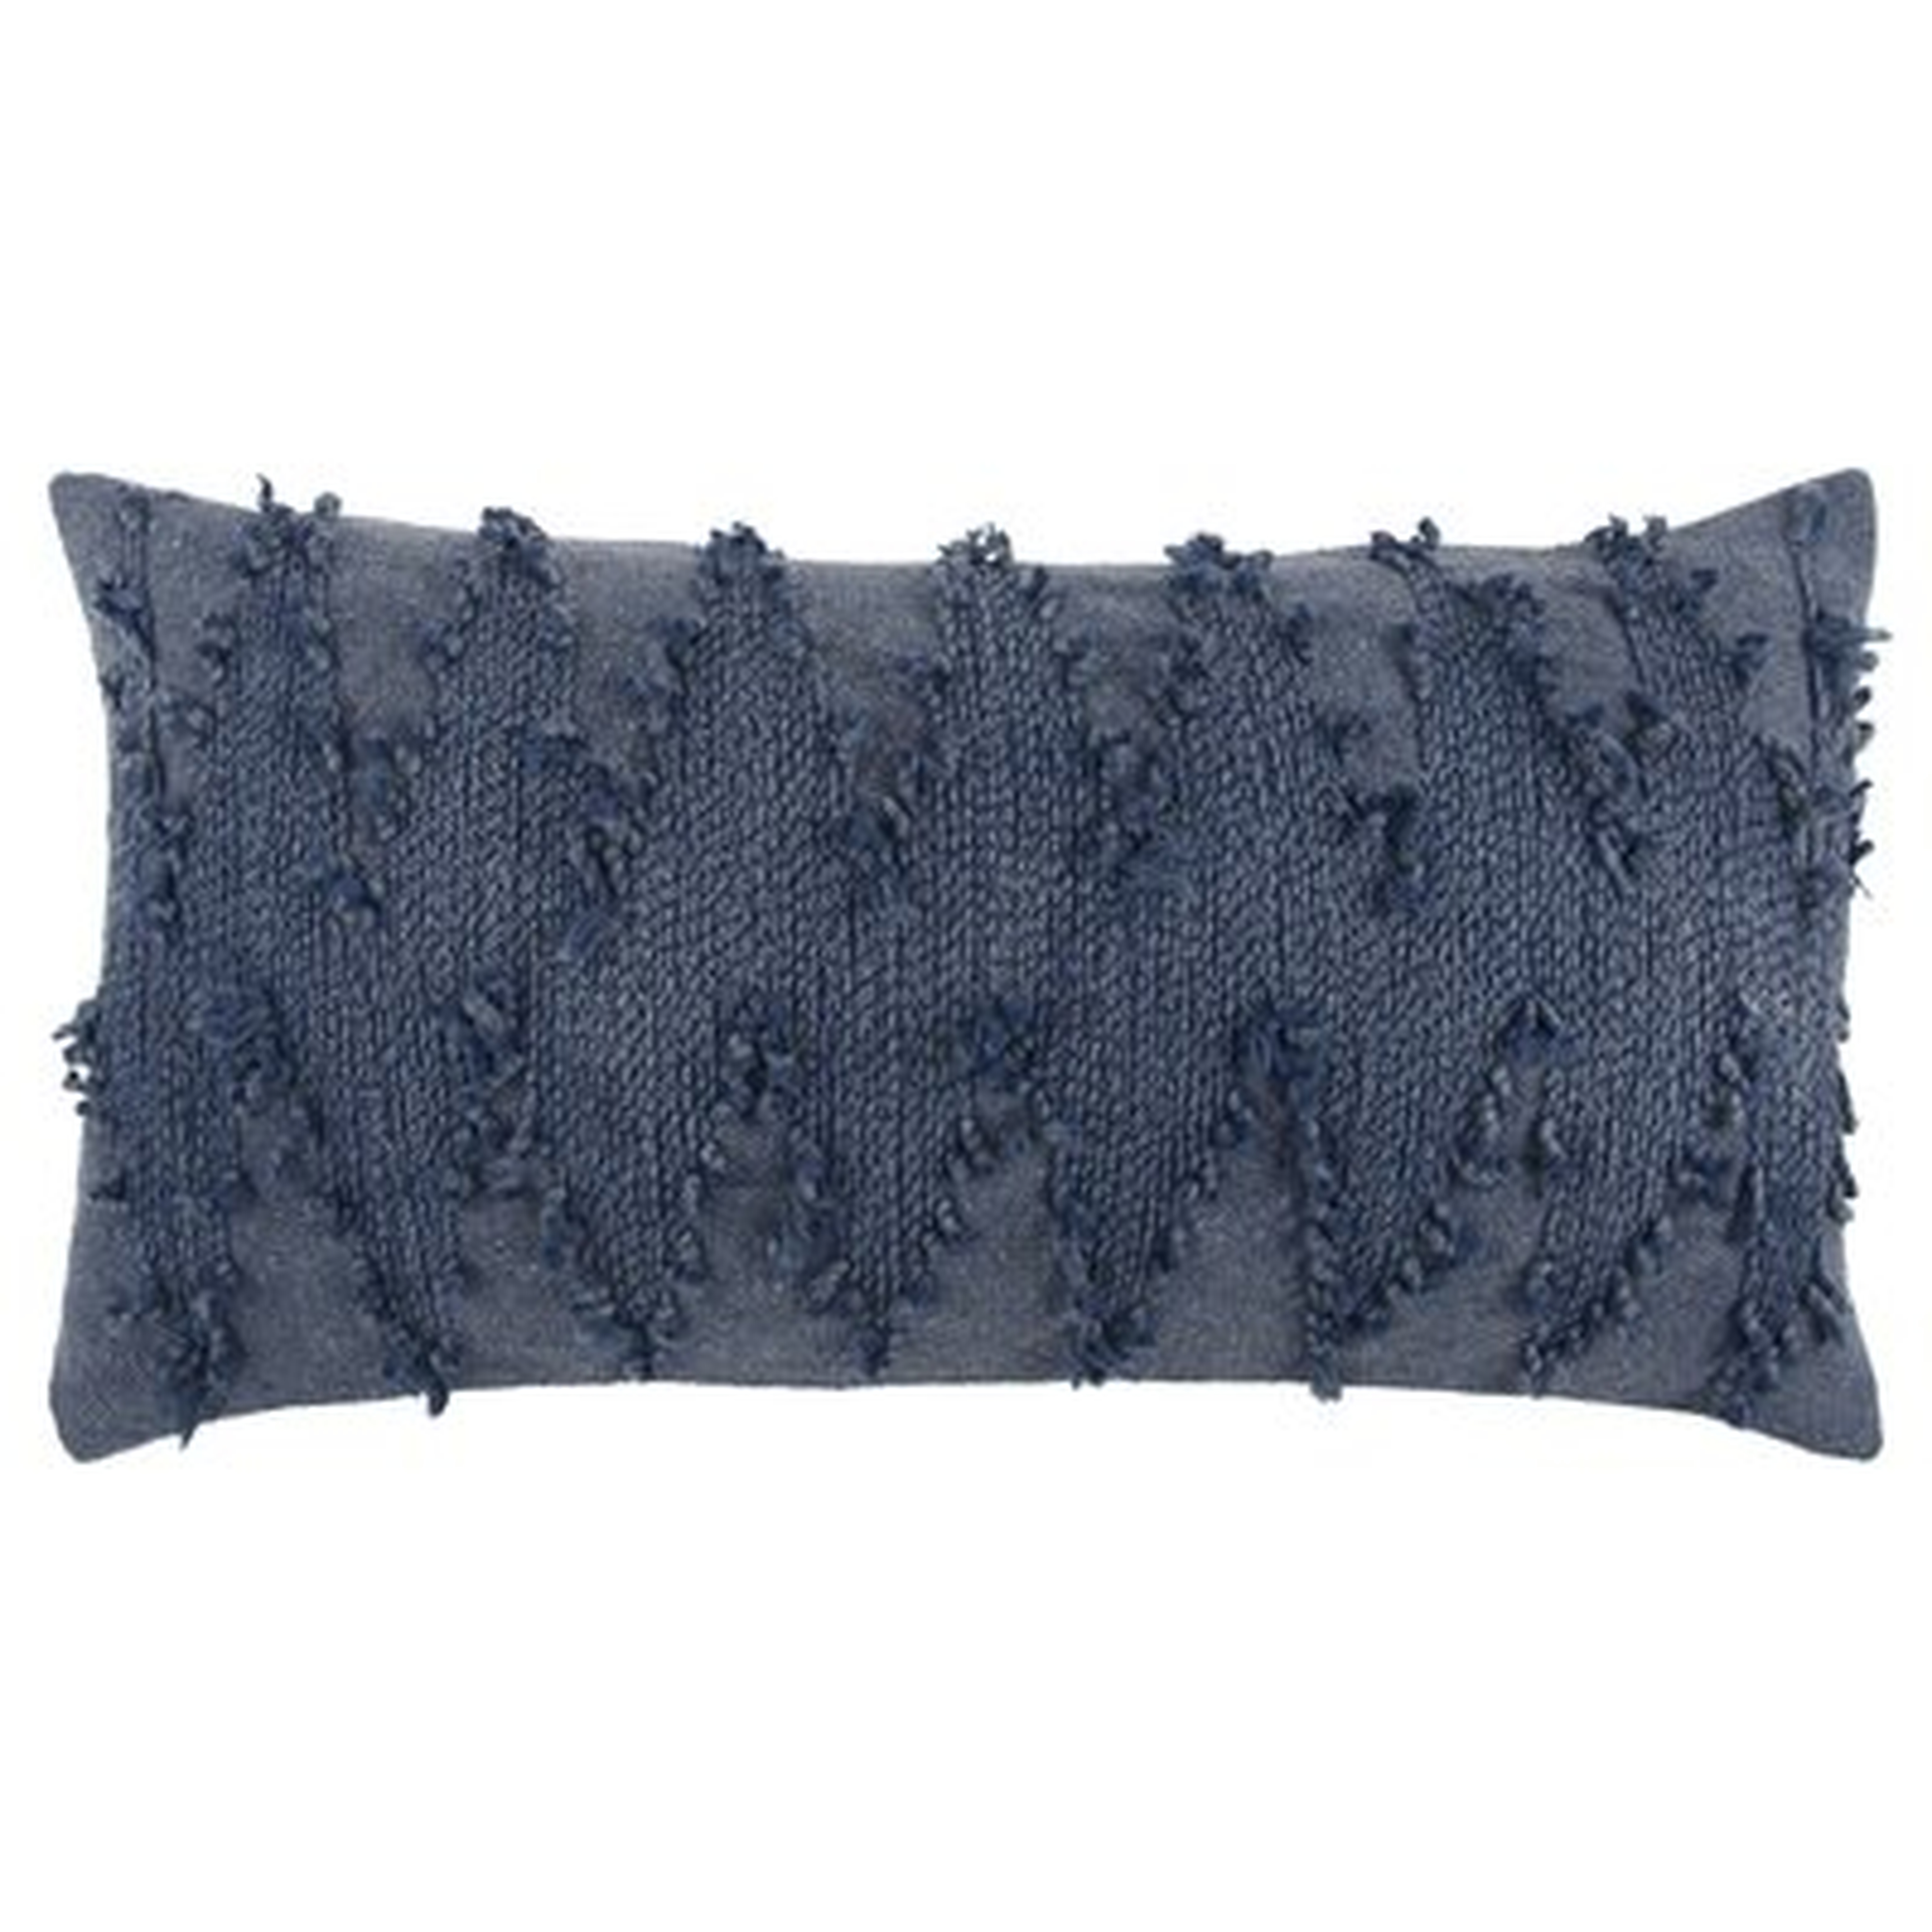 Horrell Decorative Rectangular Cotton Lumbar Pillow - Wayfair